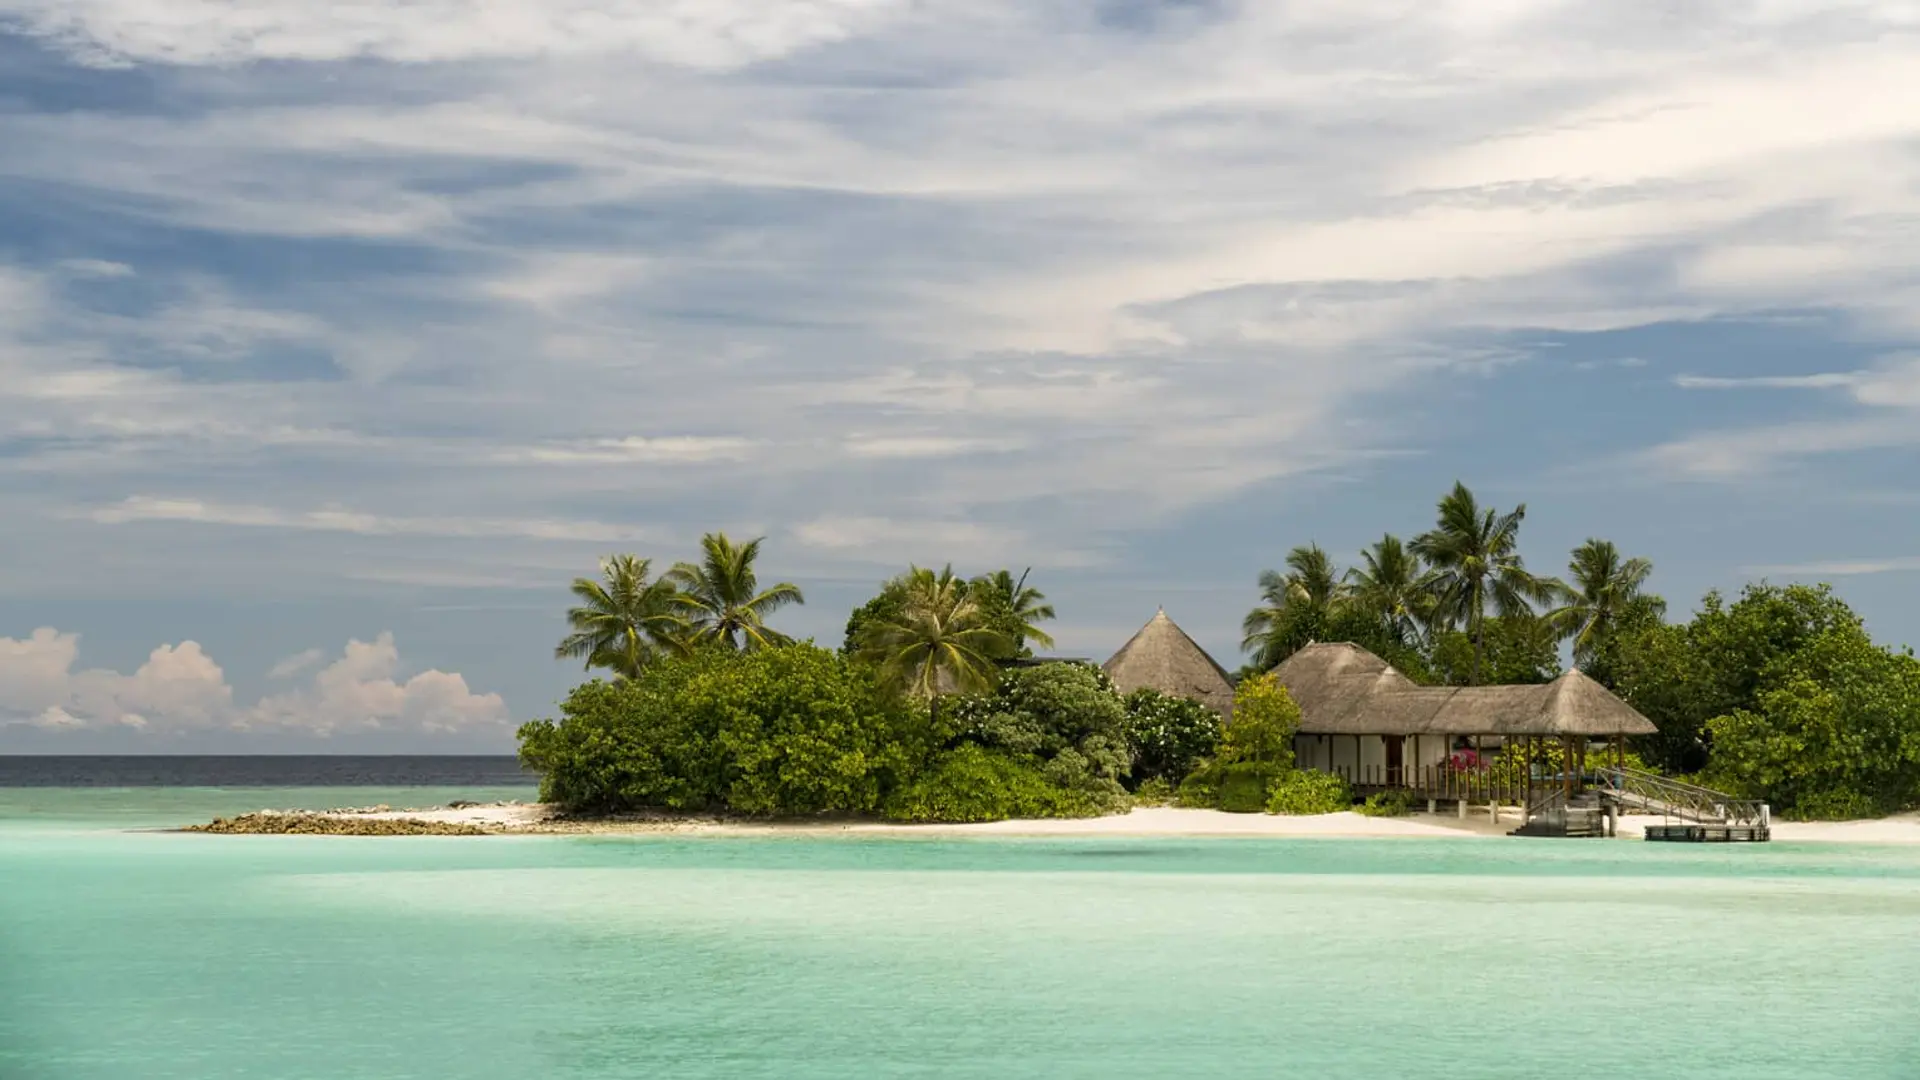 Hotel review Location' - Four Seasons Resort Maldives at Kuda Huraa - 1